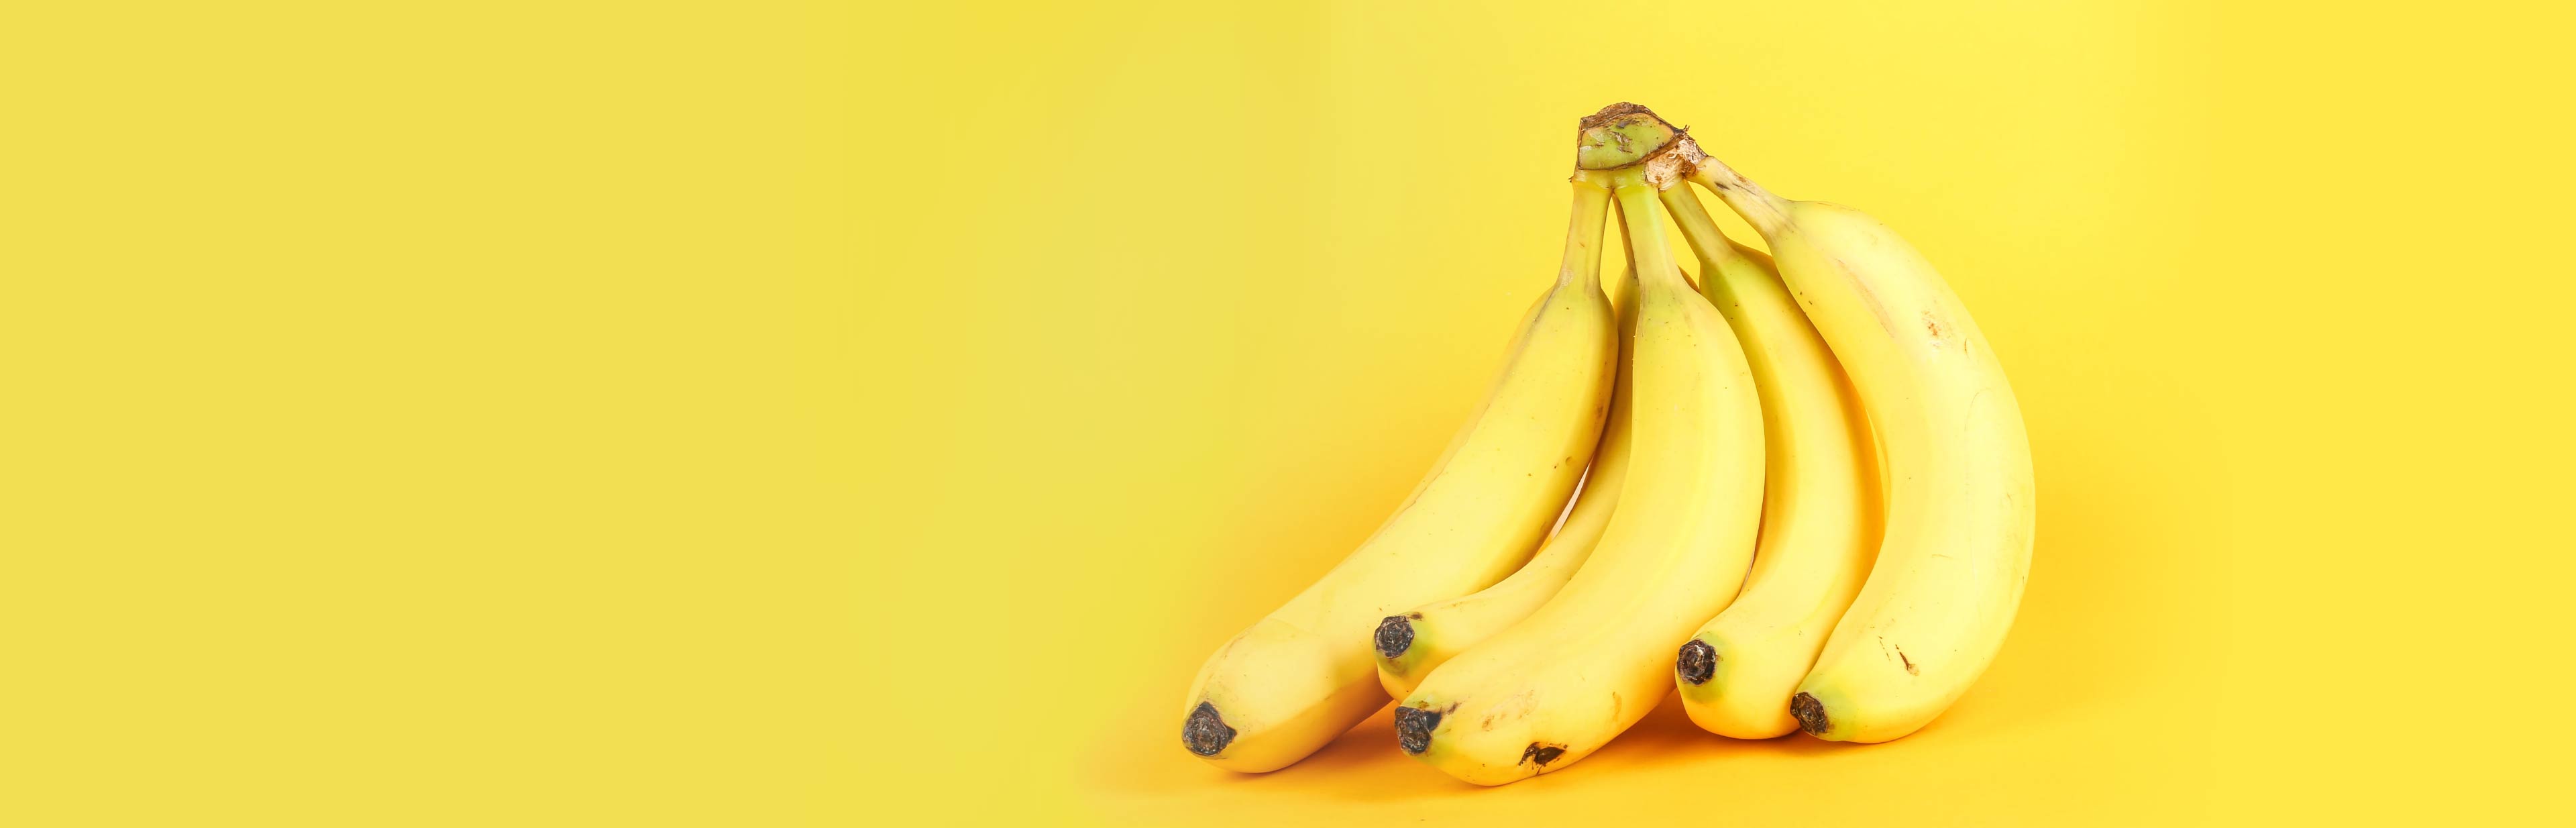 expeditie plotseling terugbetaling Goede voeding: bananen! Bananen zitten vol kalium en vitamine B6